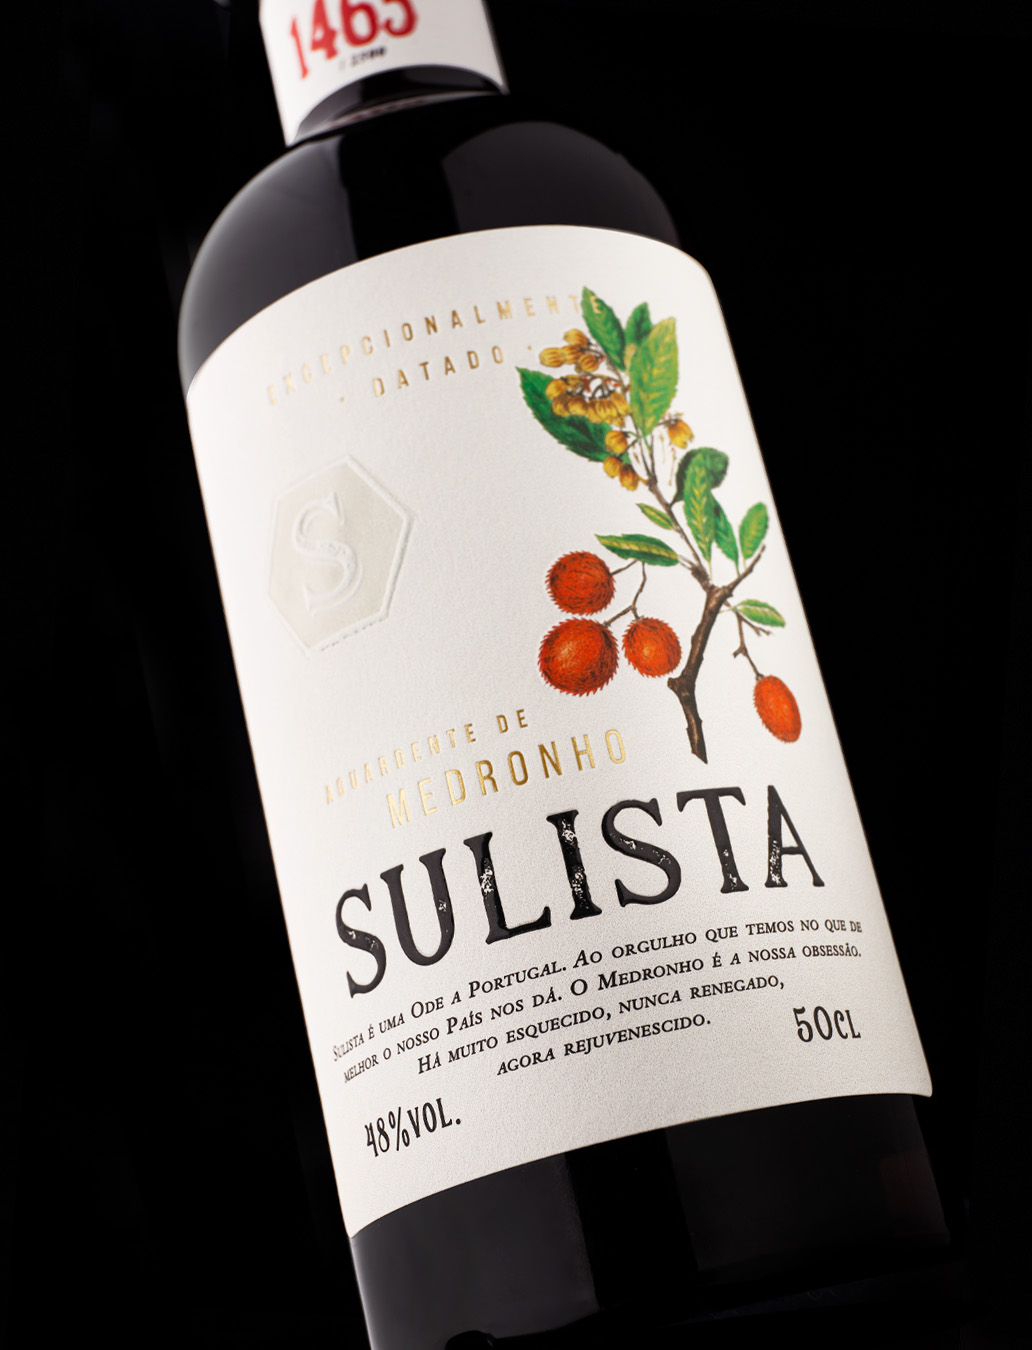 Sulista Label Design by RitaRivotti